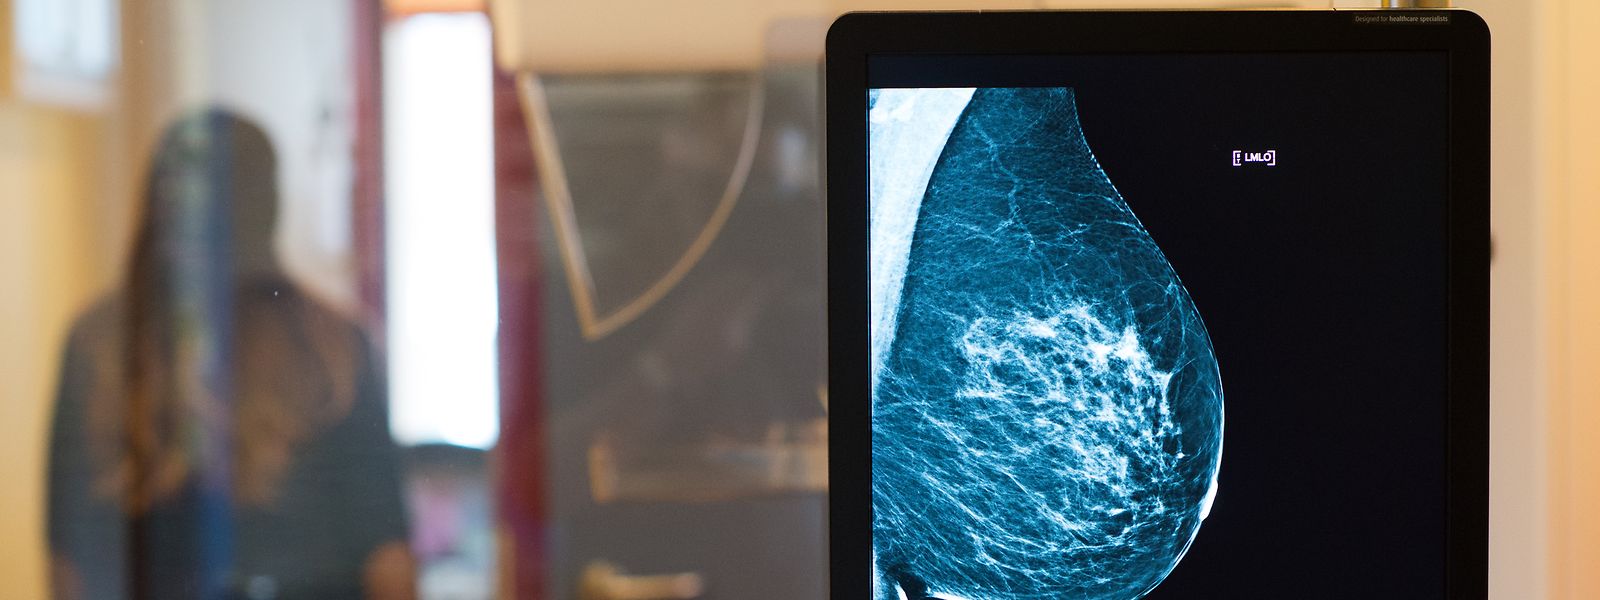 Mammografien wurden während der Pandemie drastisch eingeschränkt, erste Zahlen zu den Spätfolgen werden demnächst veröffentlicht. 